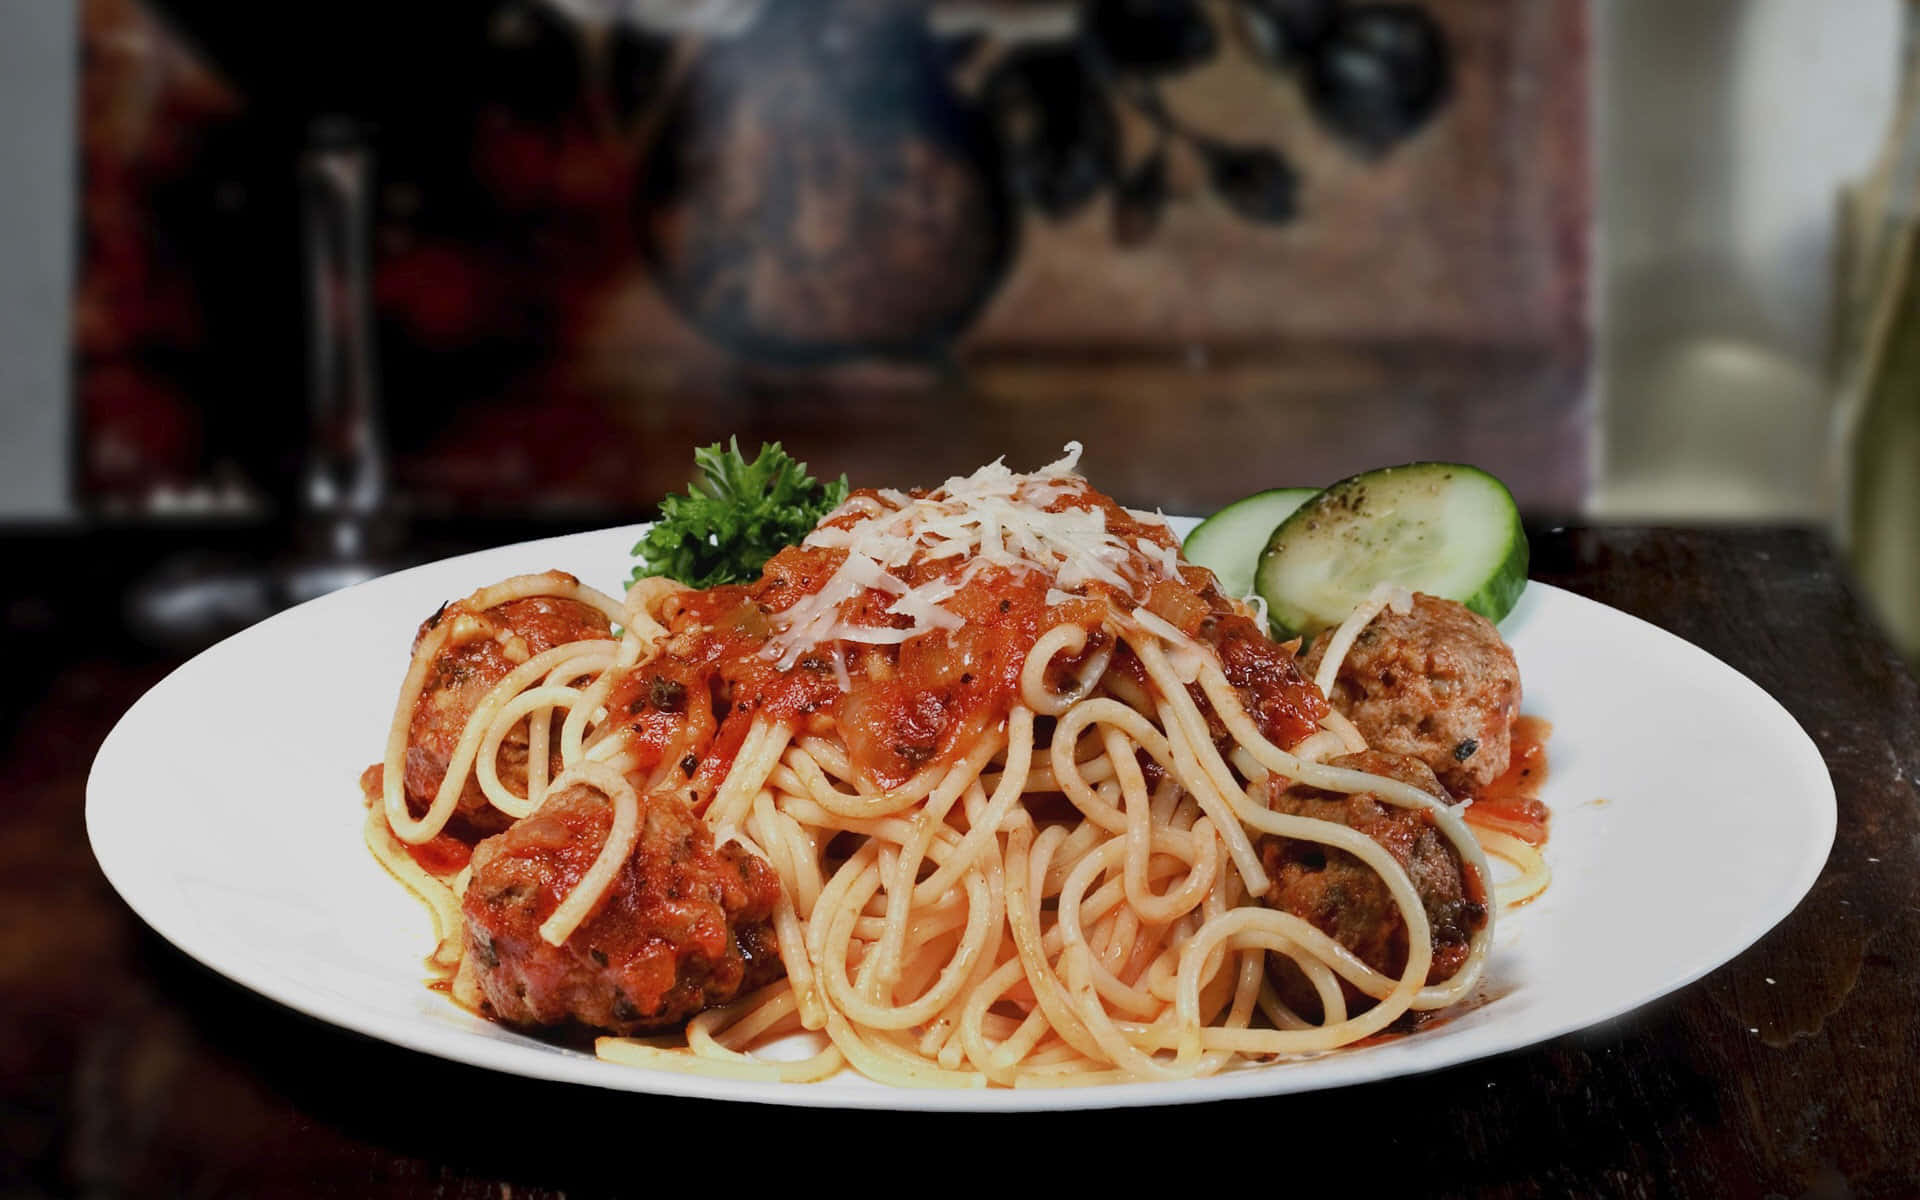 Unpiatto Di Spaghetti Con Polpette E Salsa.